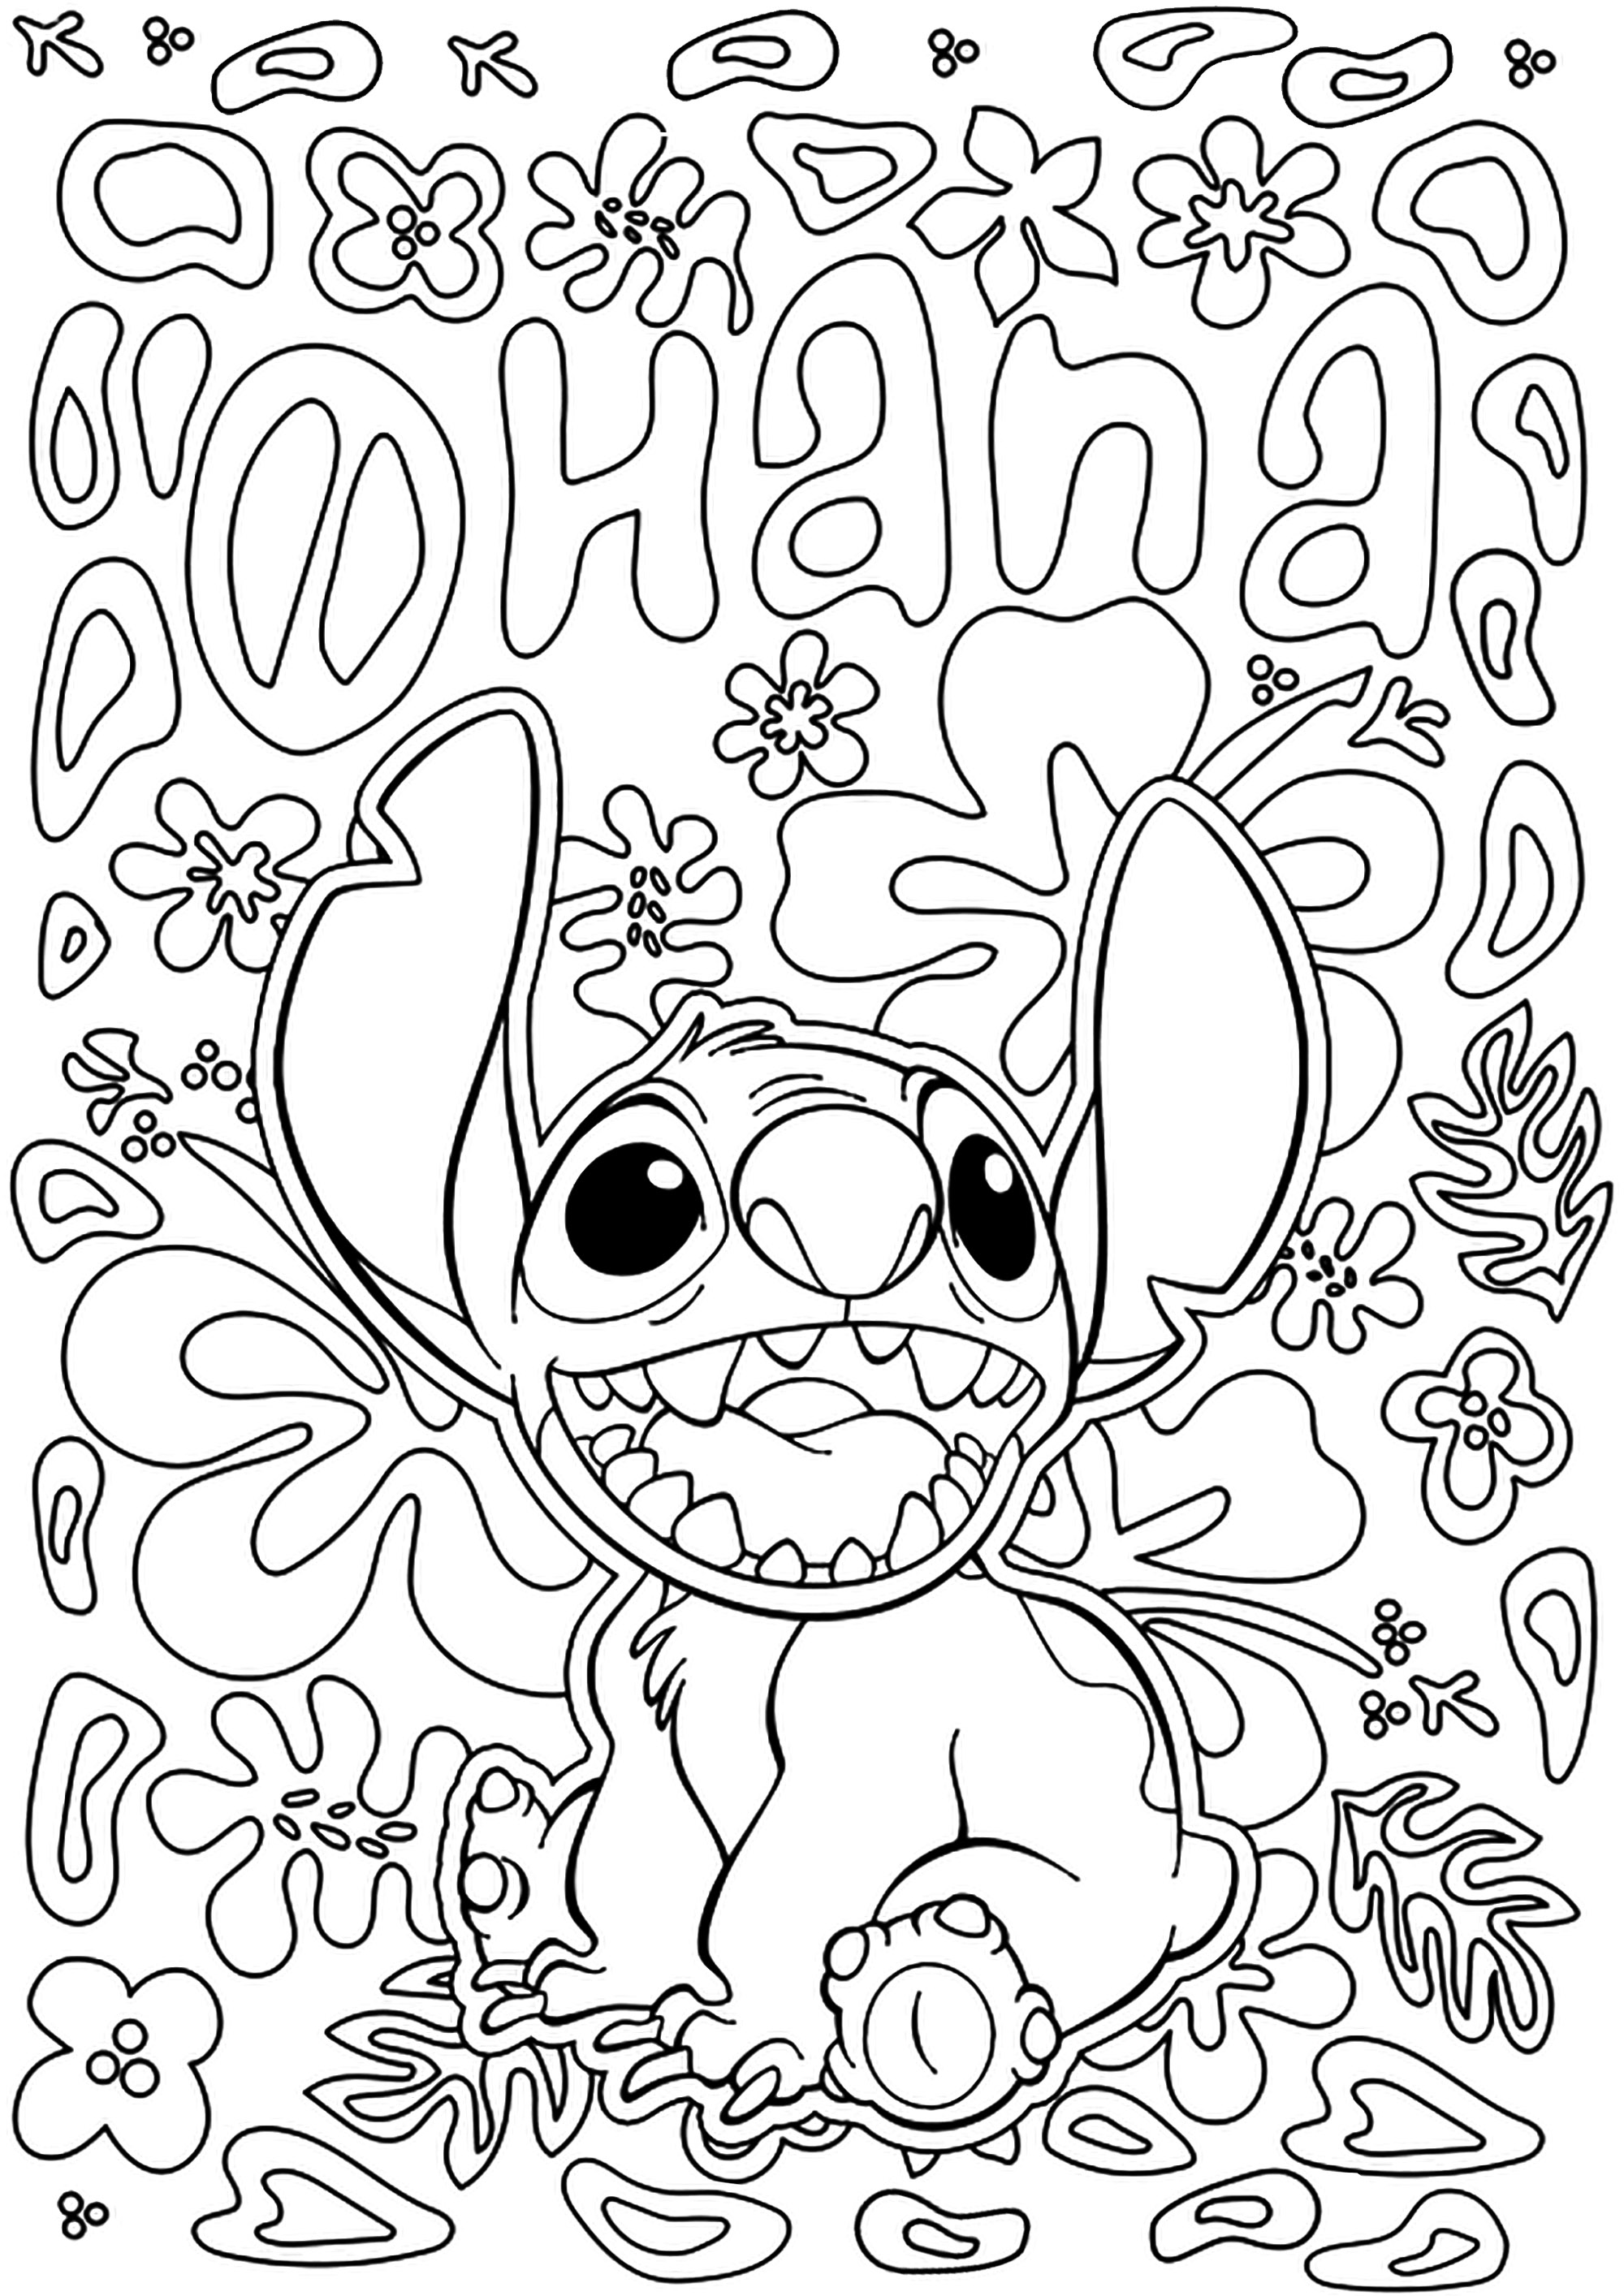 Stitch-Malvorlage mit dem Text 'Ohana' (aus dem Disney-Zeichentrickfilm Lilo und Stitch). Ohana ist ein hawaiianischer Begriff, der übersetzt so viel wie 'Familie' bedeutet, sei es durch Adoption, Blut oder Absicht.